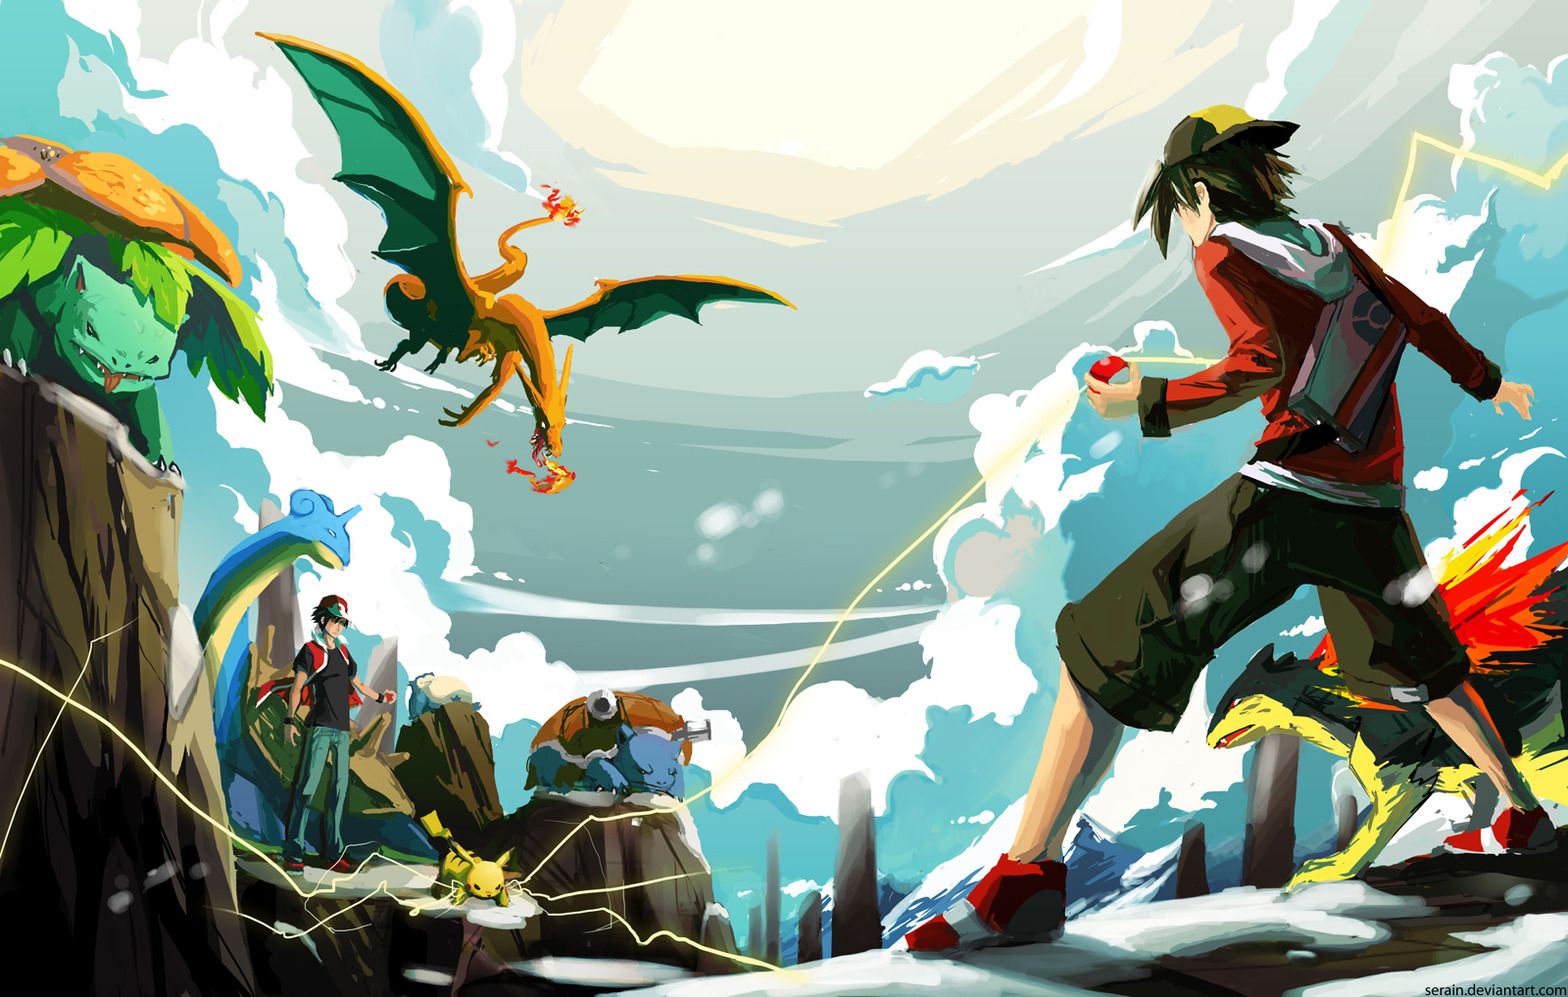 Epic Battle. Cool pokemon wallpaper, Pokemon, Anime wallpaper download